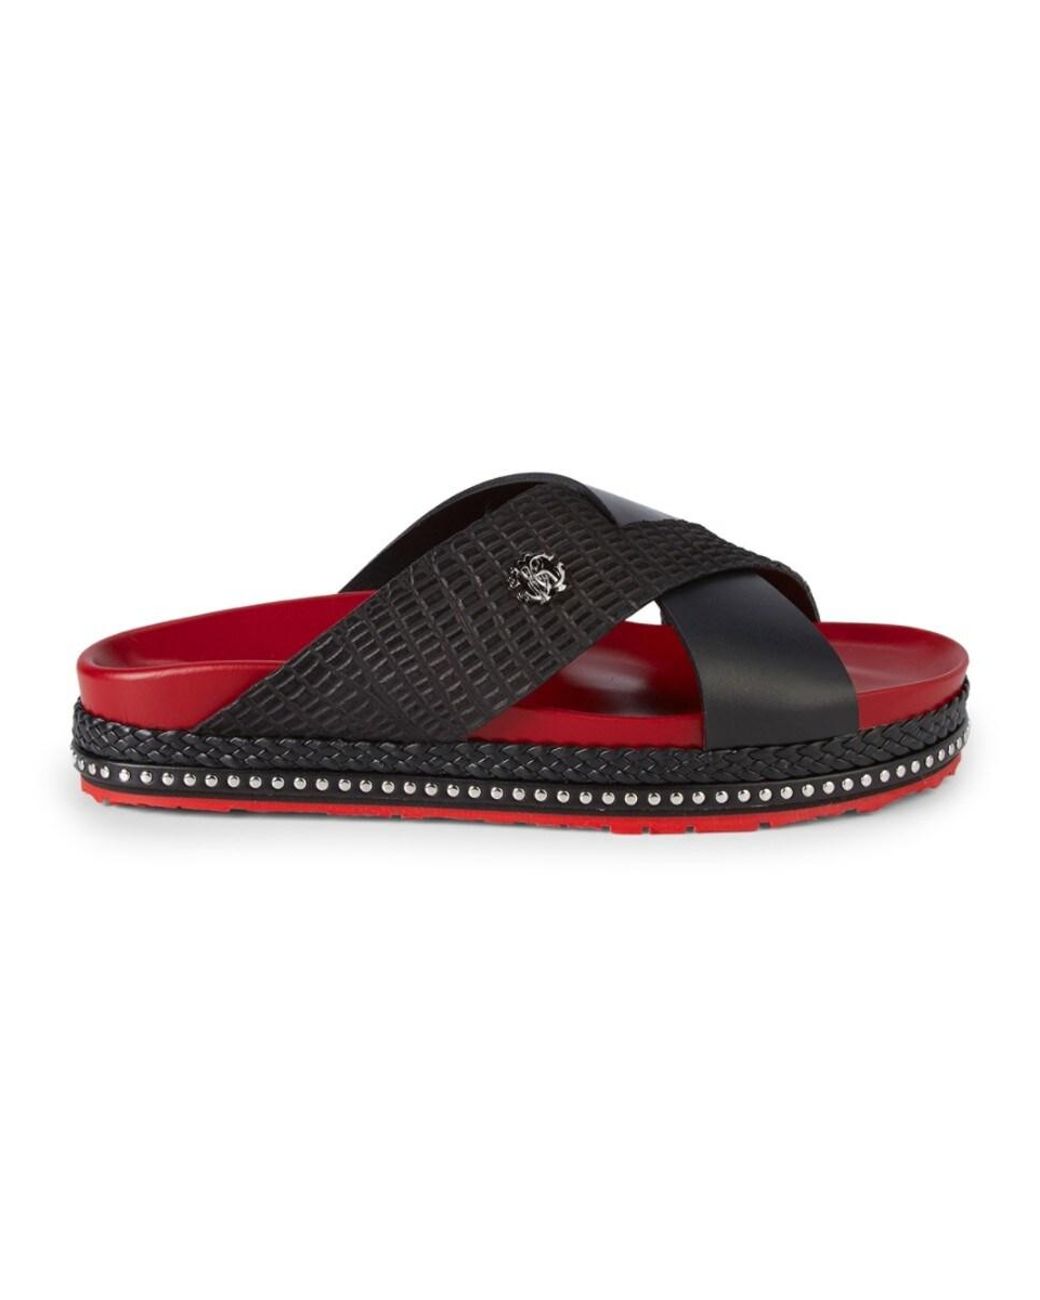 Roberto Cavalli Men's Leather Crisscross Slides - Black - Size 7 Sandals  for Men | Lyst